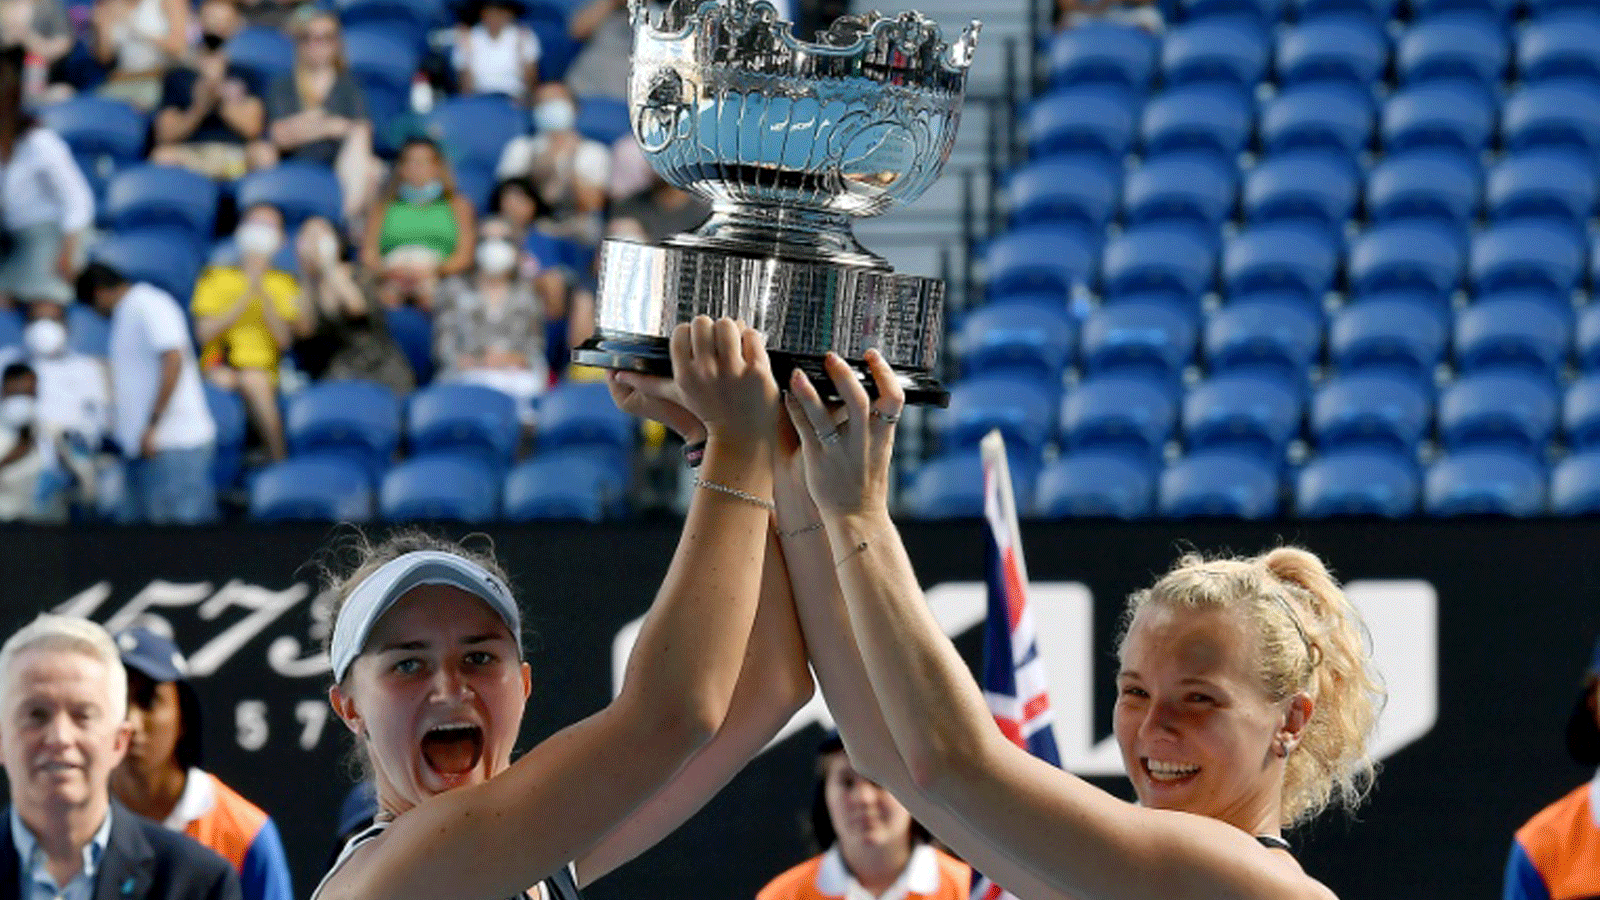 التشيكيتان باربورا كرايتشيكوفا (يسار) وكاتيرينا سينياكوفا ترفعان الكأس بعد تتويجهما بلقب زوجي السيدات في بطولة أستراليا المفتوحة لكرة المضرب، ملبورن في 30 كانون الثاني/يناير 2022